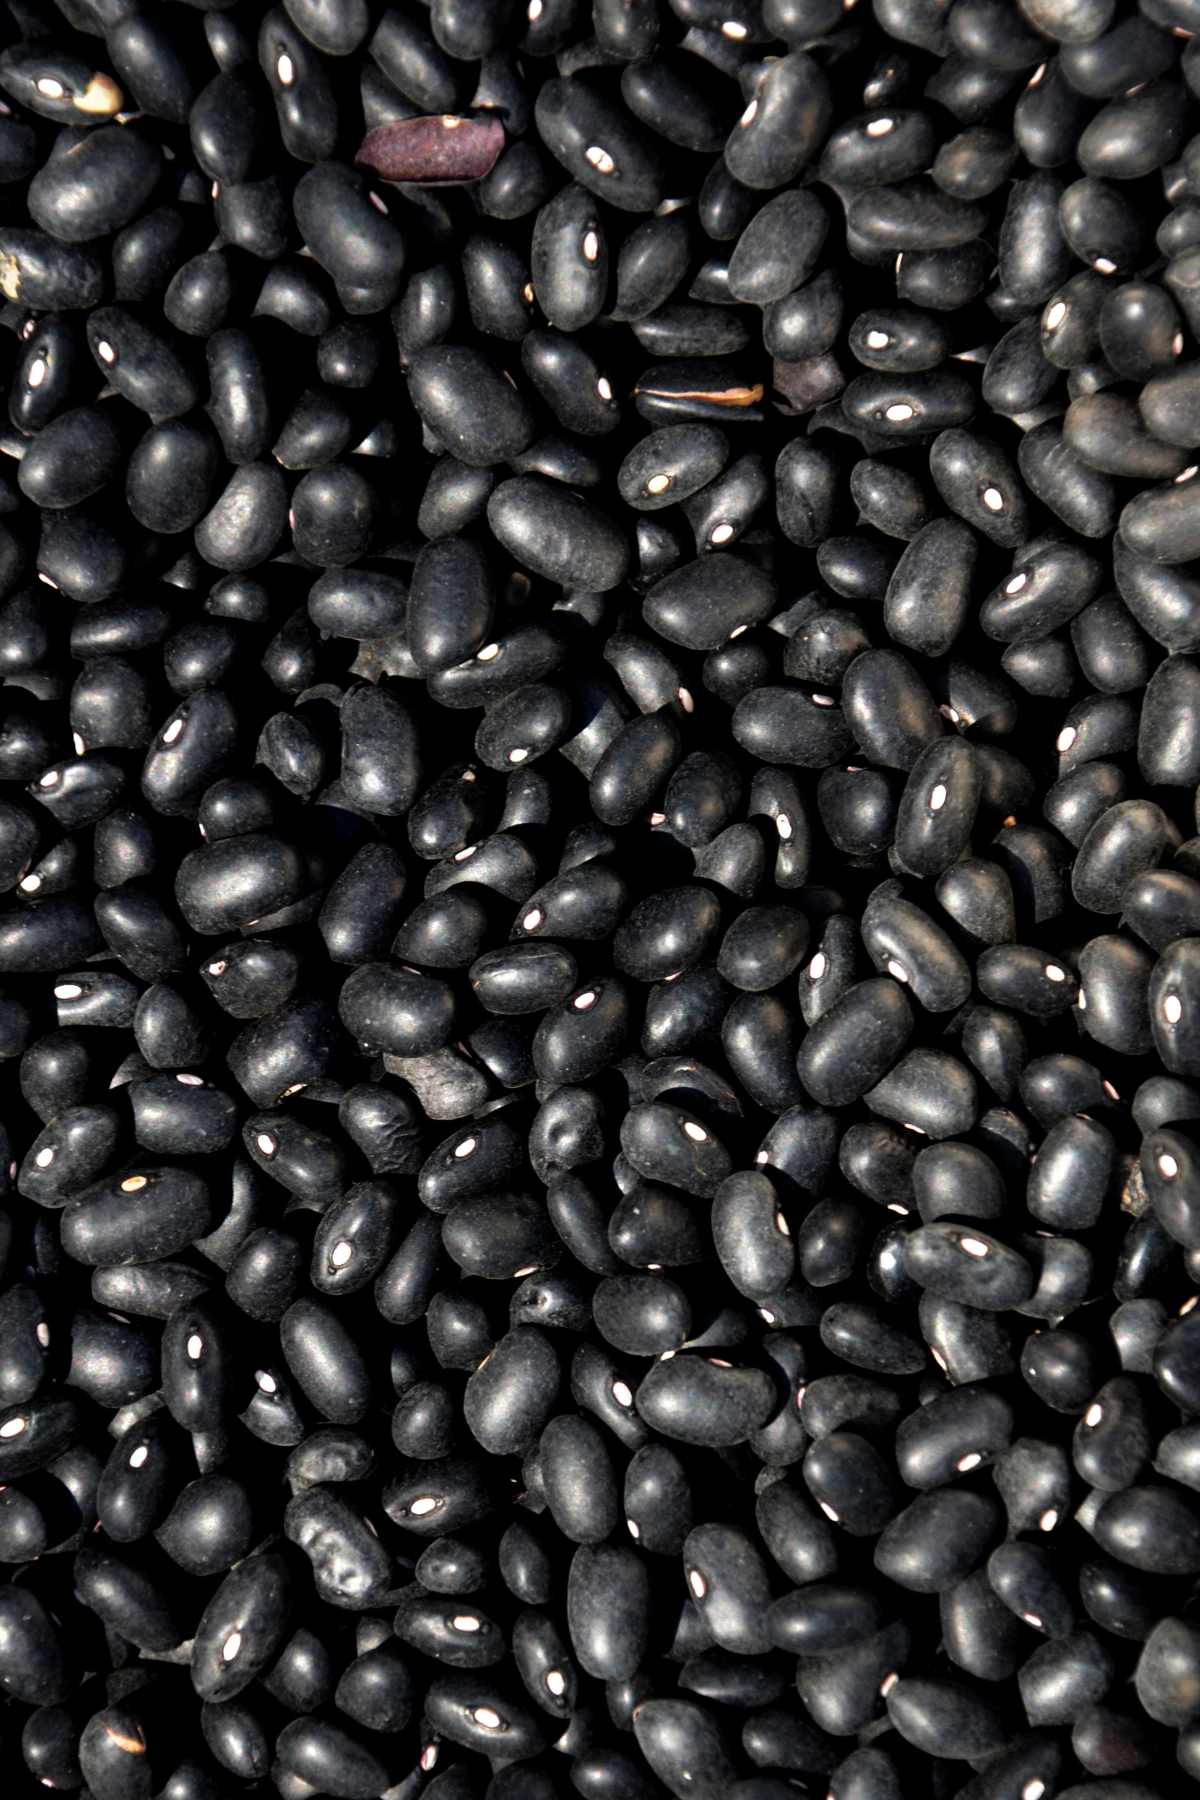 pinto beans vs black beans